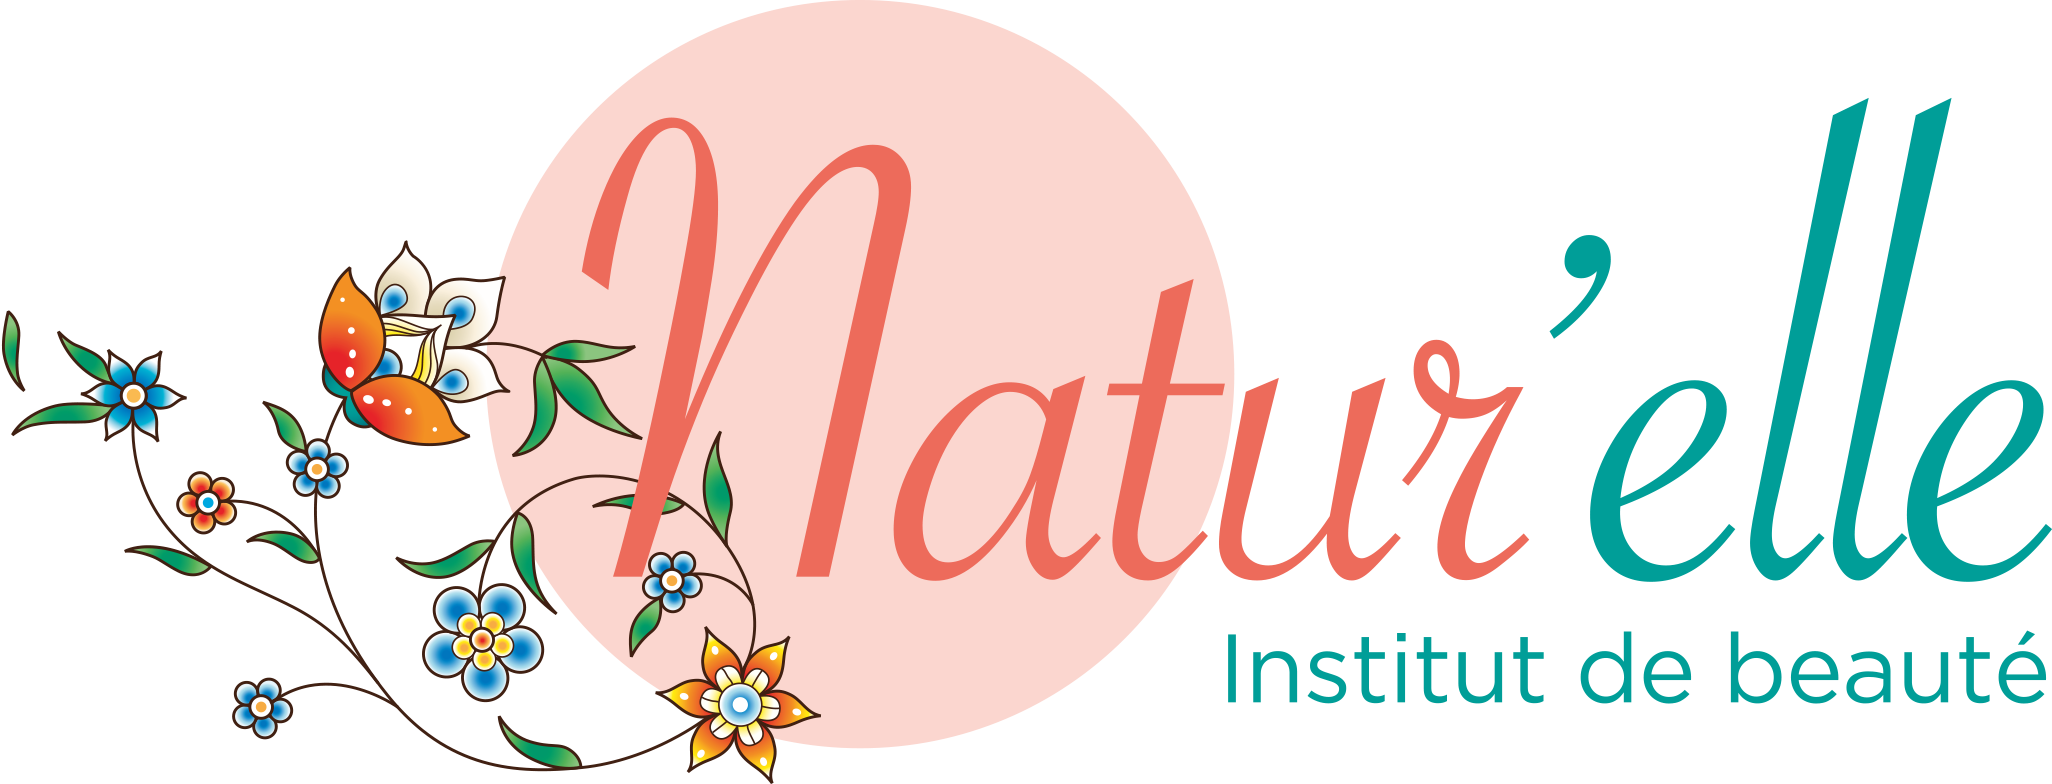 Institut Natur'elle